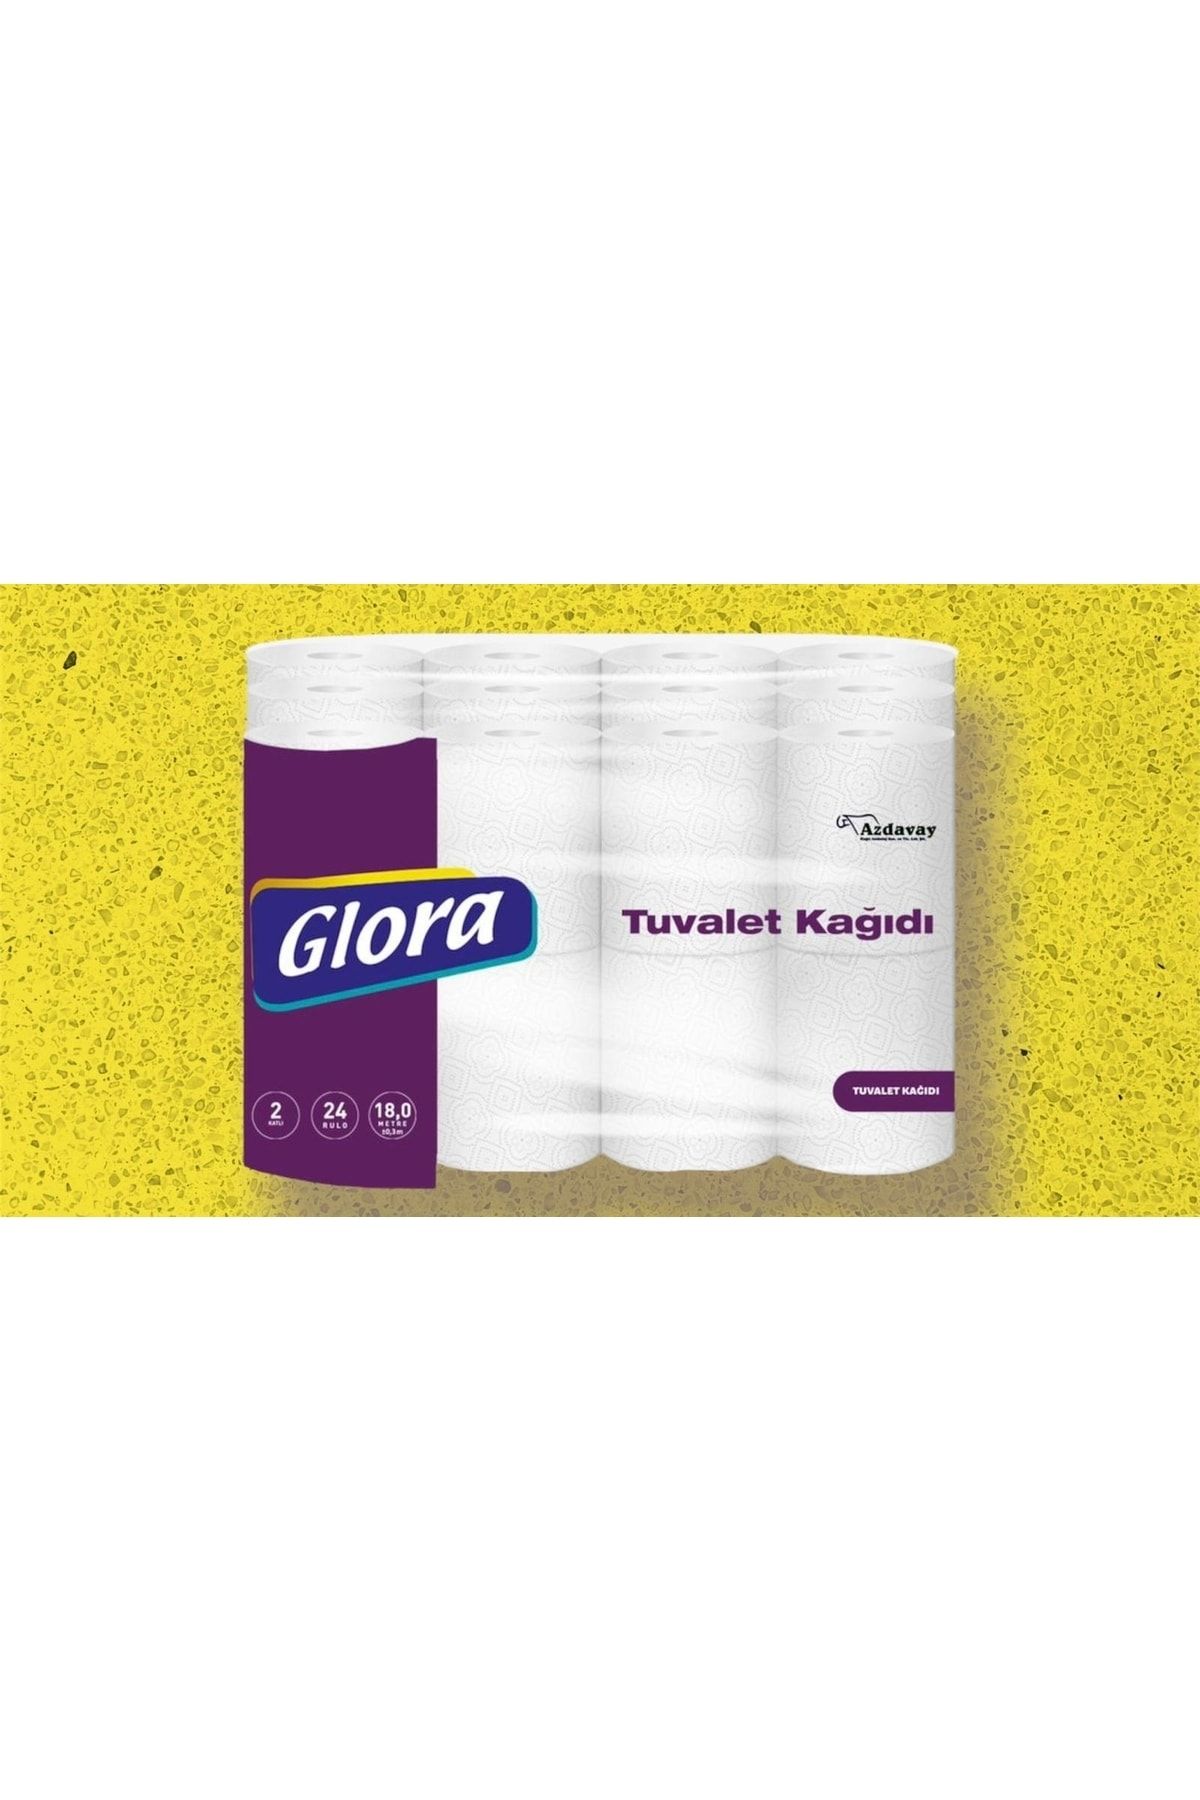 Glora Tuvalet Kağıdı 72 Rulo